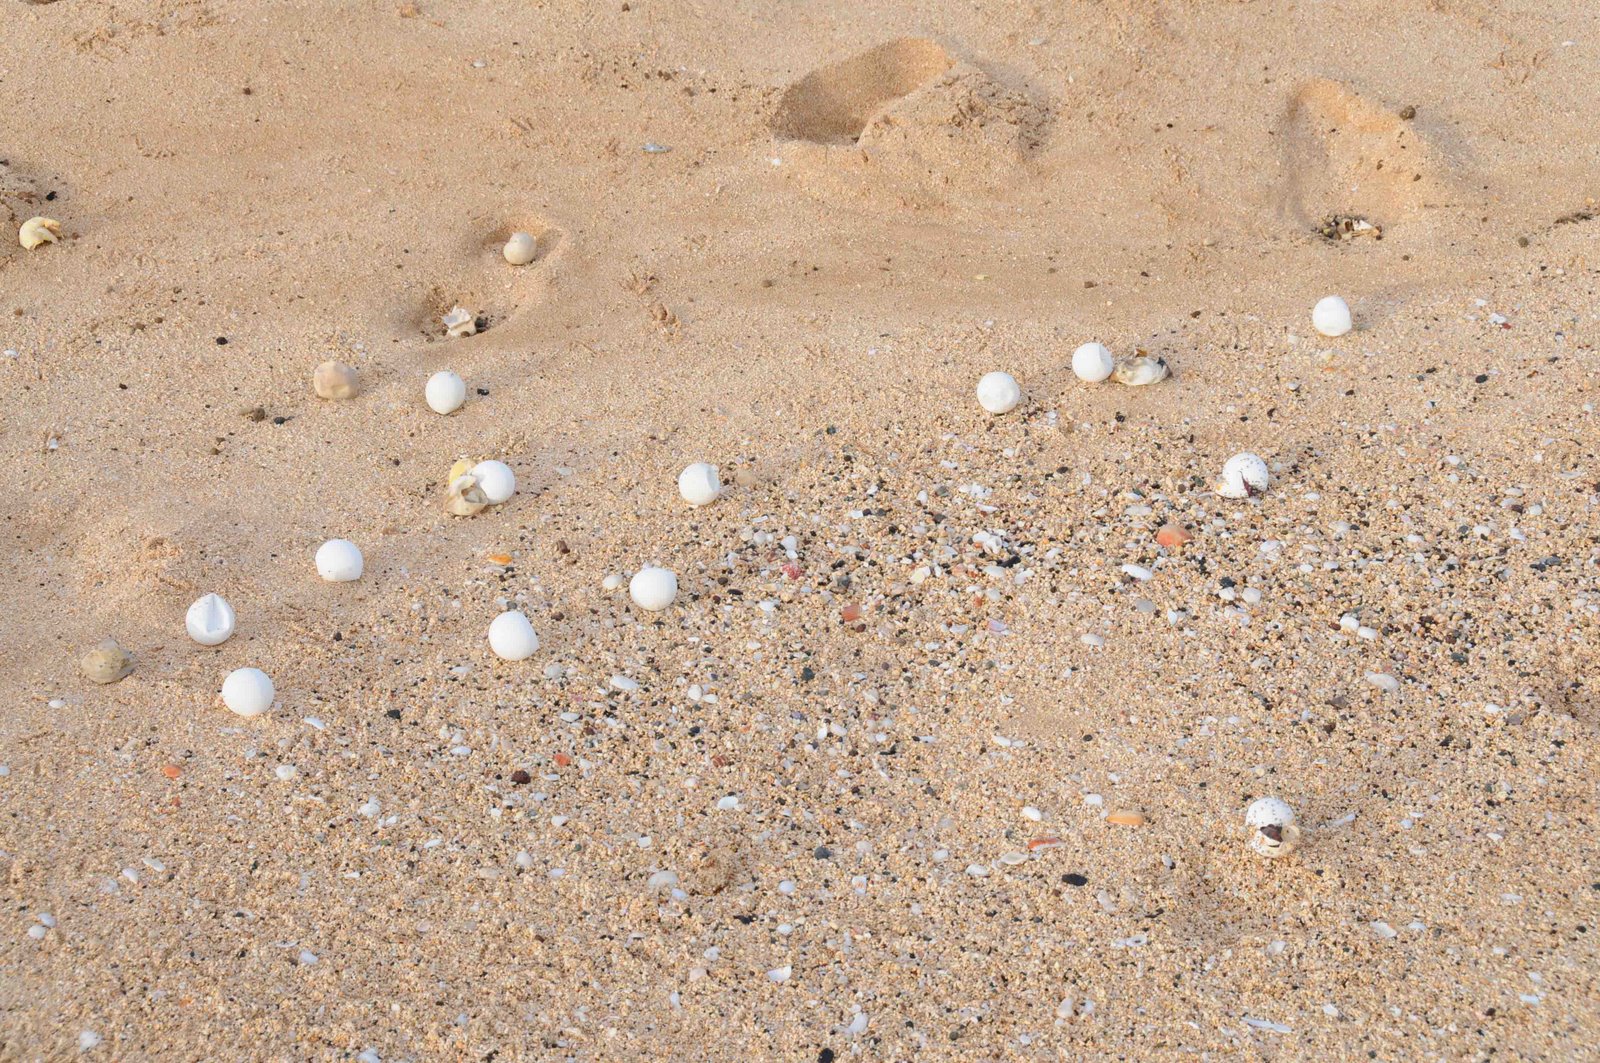 [Turtle+eggs+at+Long+beach+by+Susanne+Åkesson.jpg]